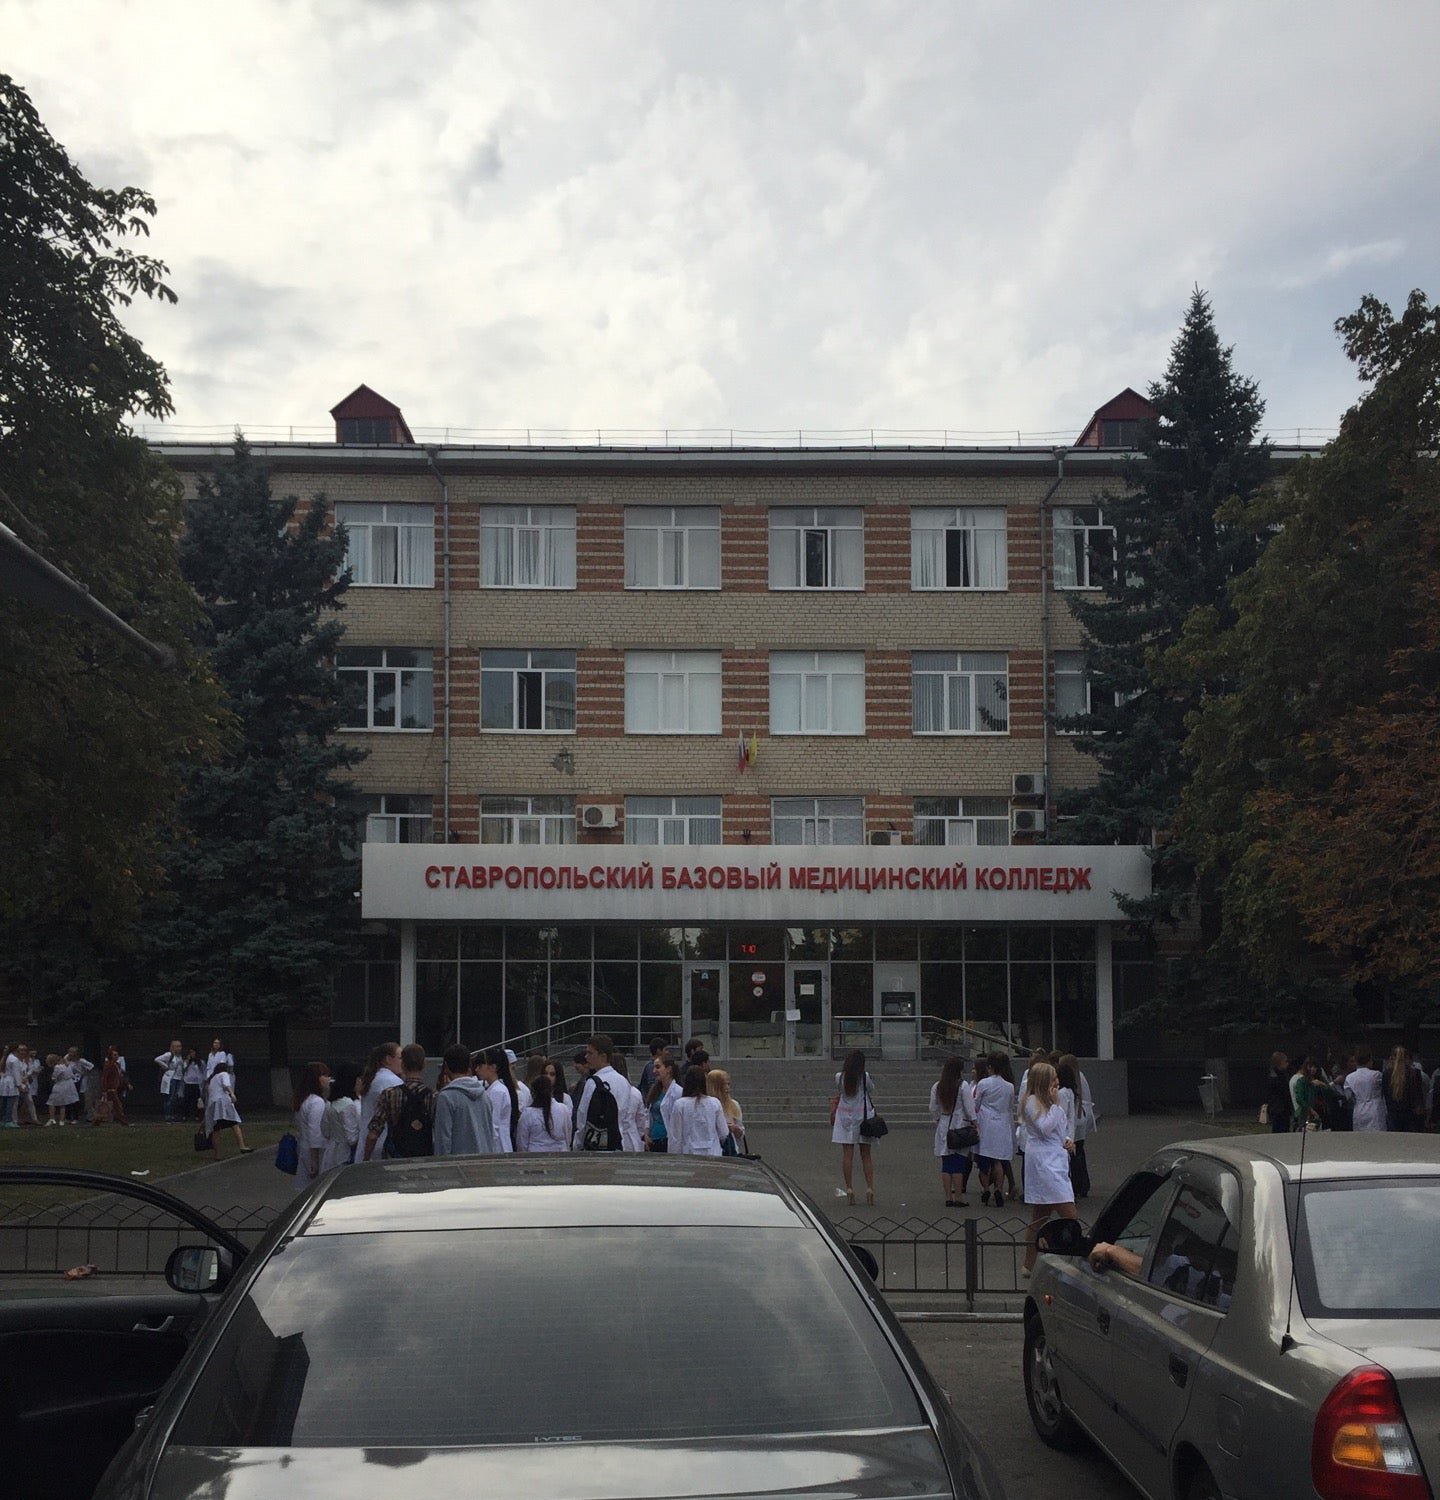 Сайт медицинской ставрополь колледжа. Медицинский колледж Ставрополь на Серова. СБМК колледж Ставрополь. Серова 279 Ставрополь медколледж. Колледж на Серова в Ставрополе.